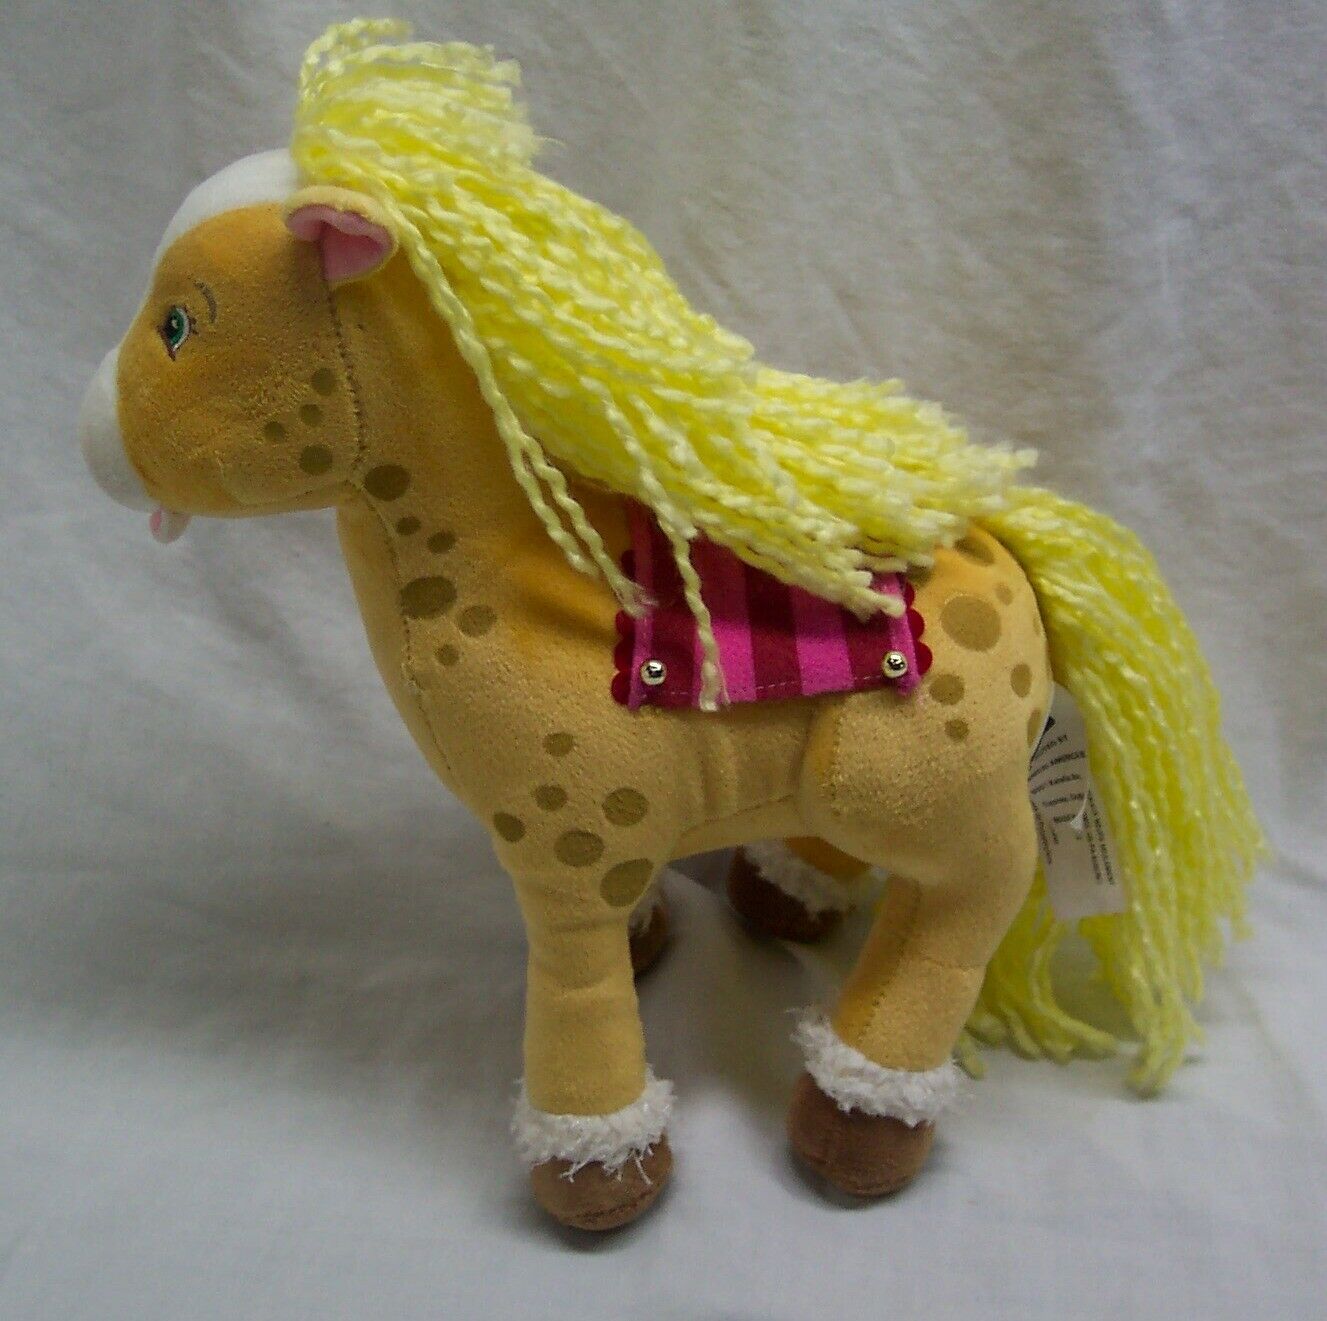 Primary image for Strawberry Shortcake HONEY PIE HORSE 10" Plush STUFFED ANIMAL Toy 2004 Bandai